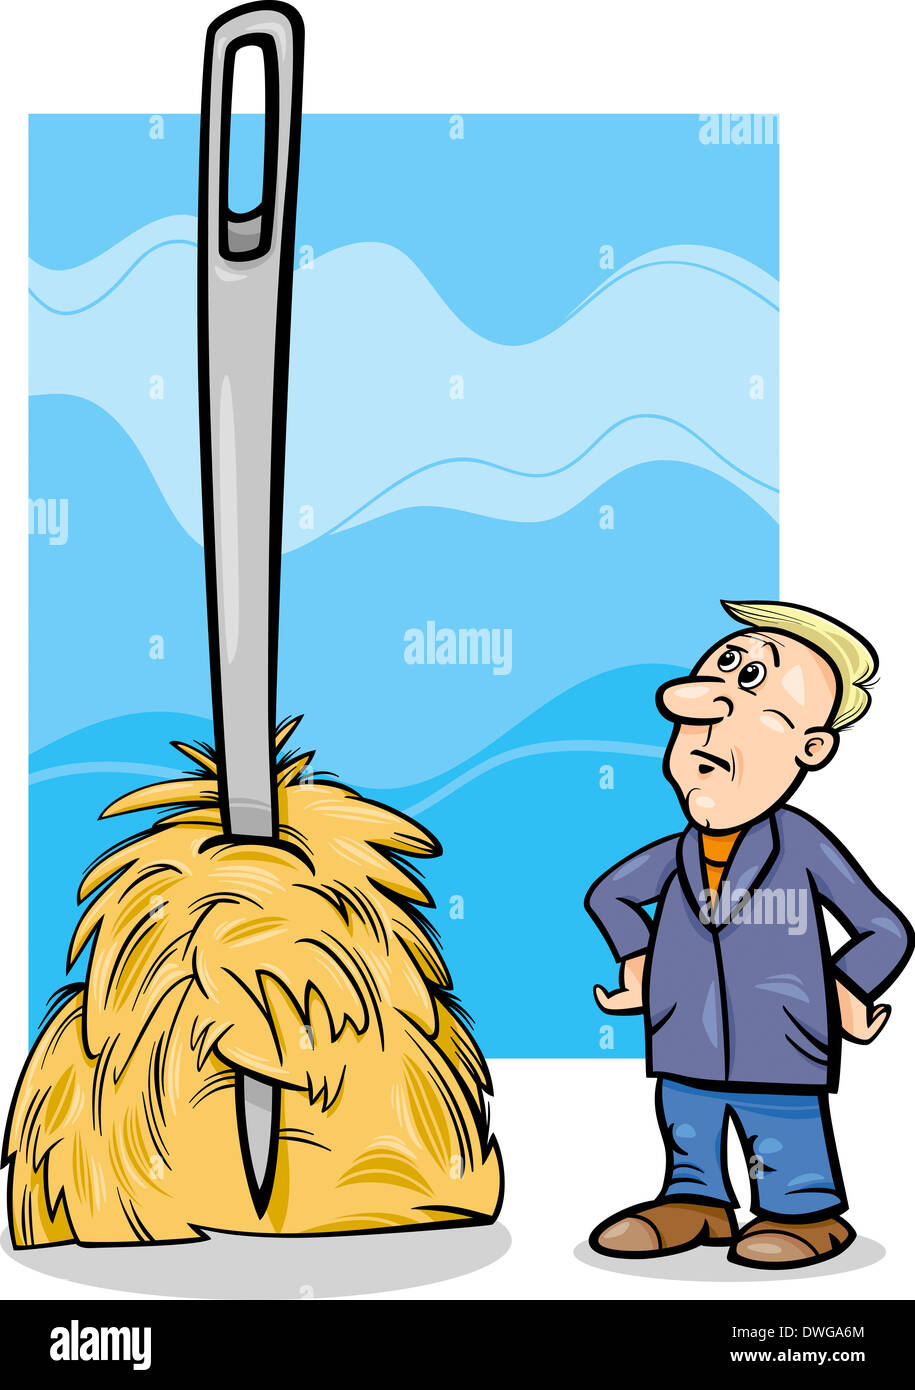 Cartoon Humor Concept Illustration der Nadel in einem Heuhaufen Spruch oder Sprichwort Stockfoto